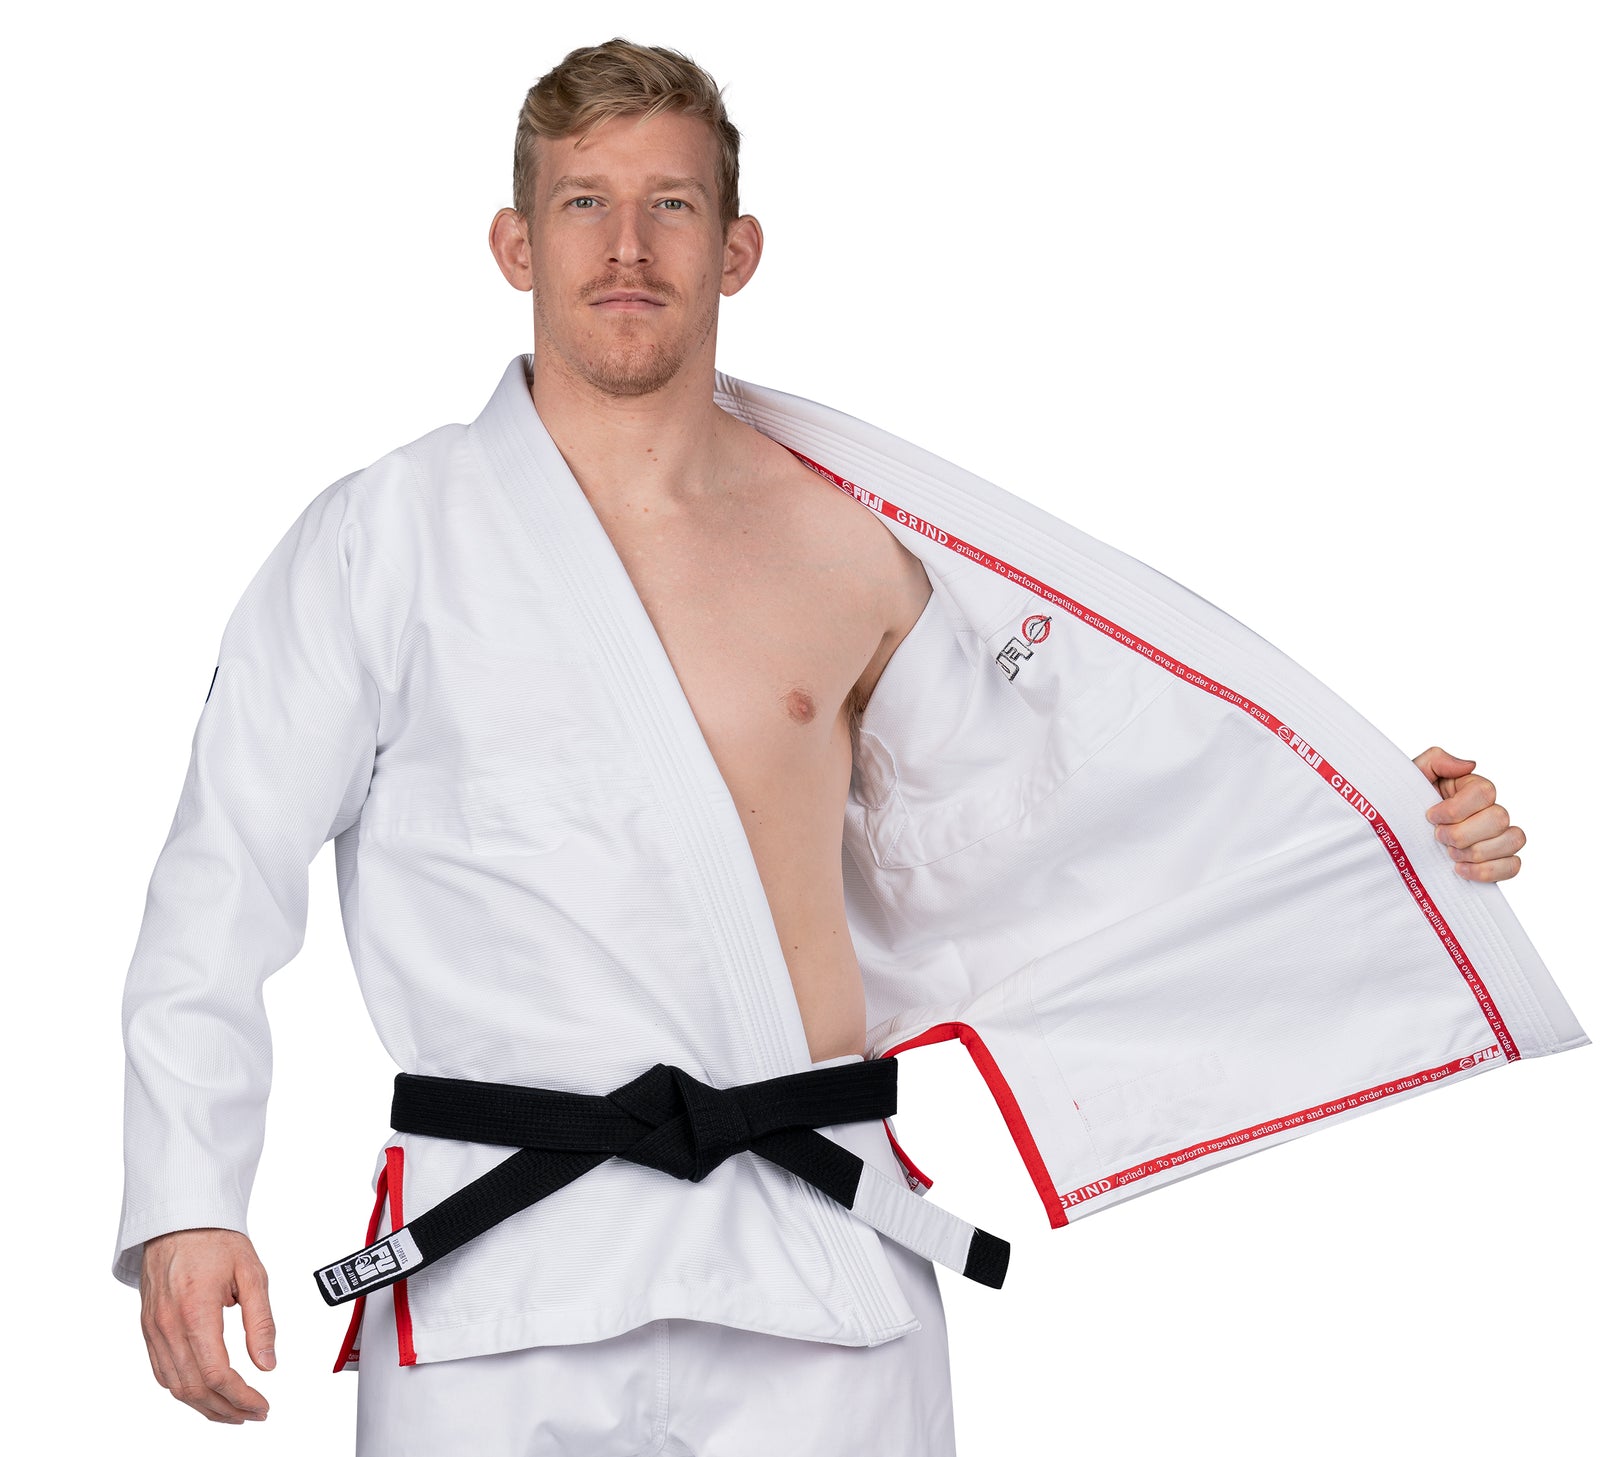 Blank Kimonos Pearl Weave BJJ Gi w/ Free White Belt